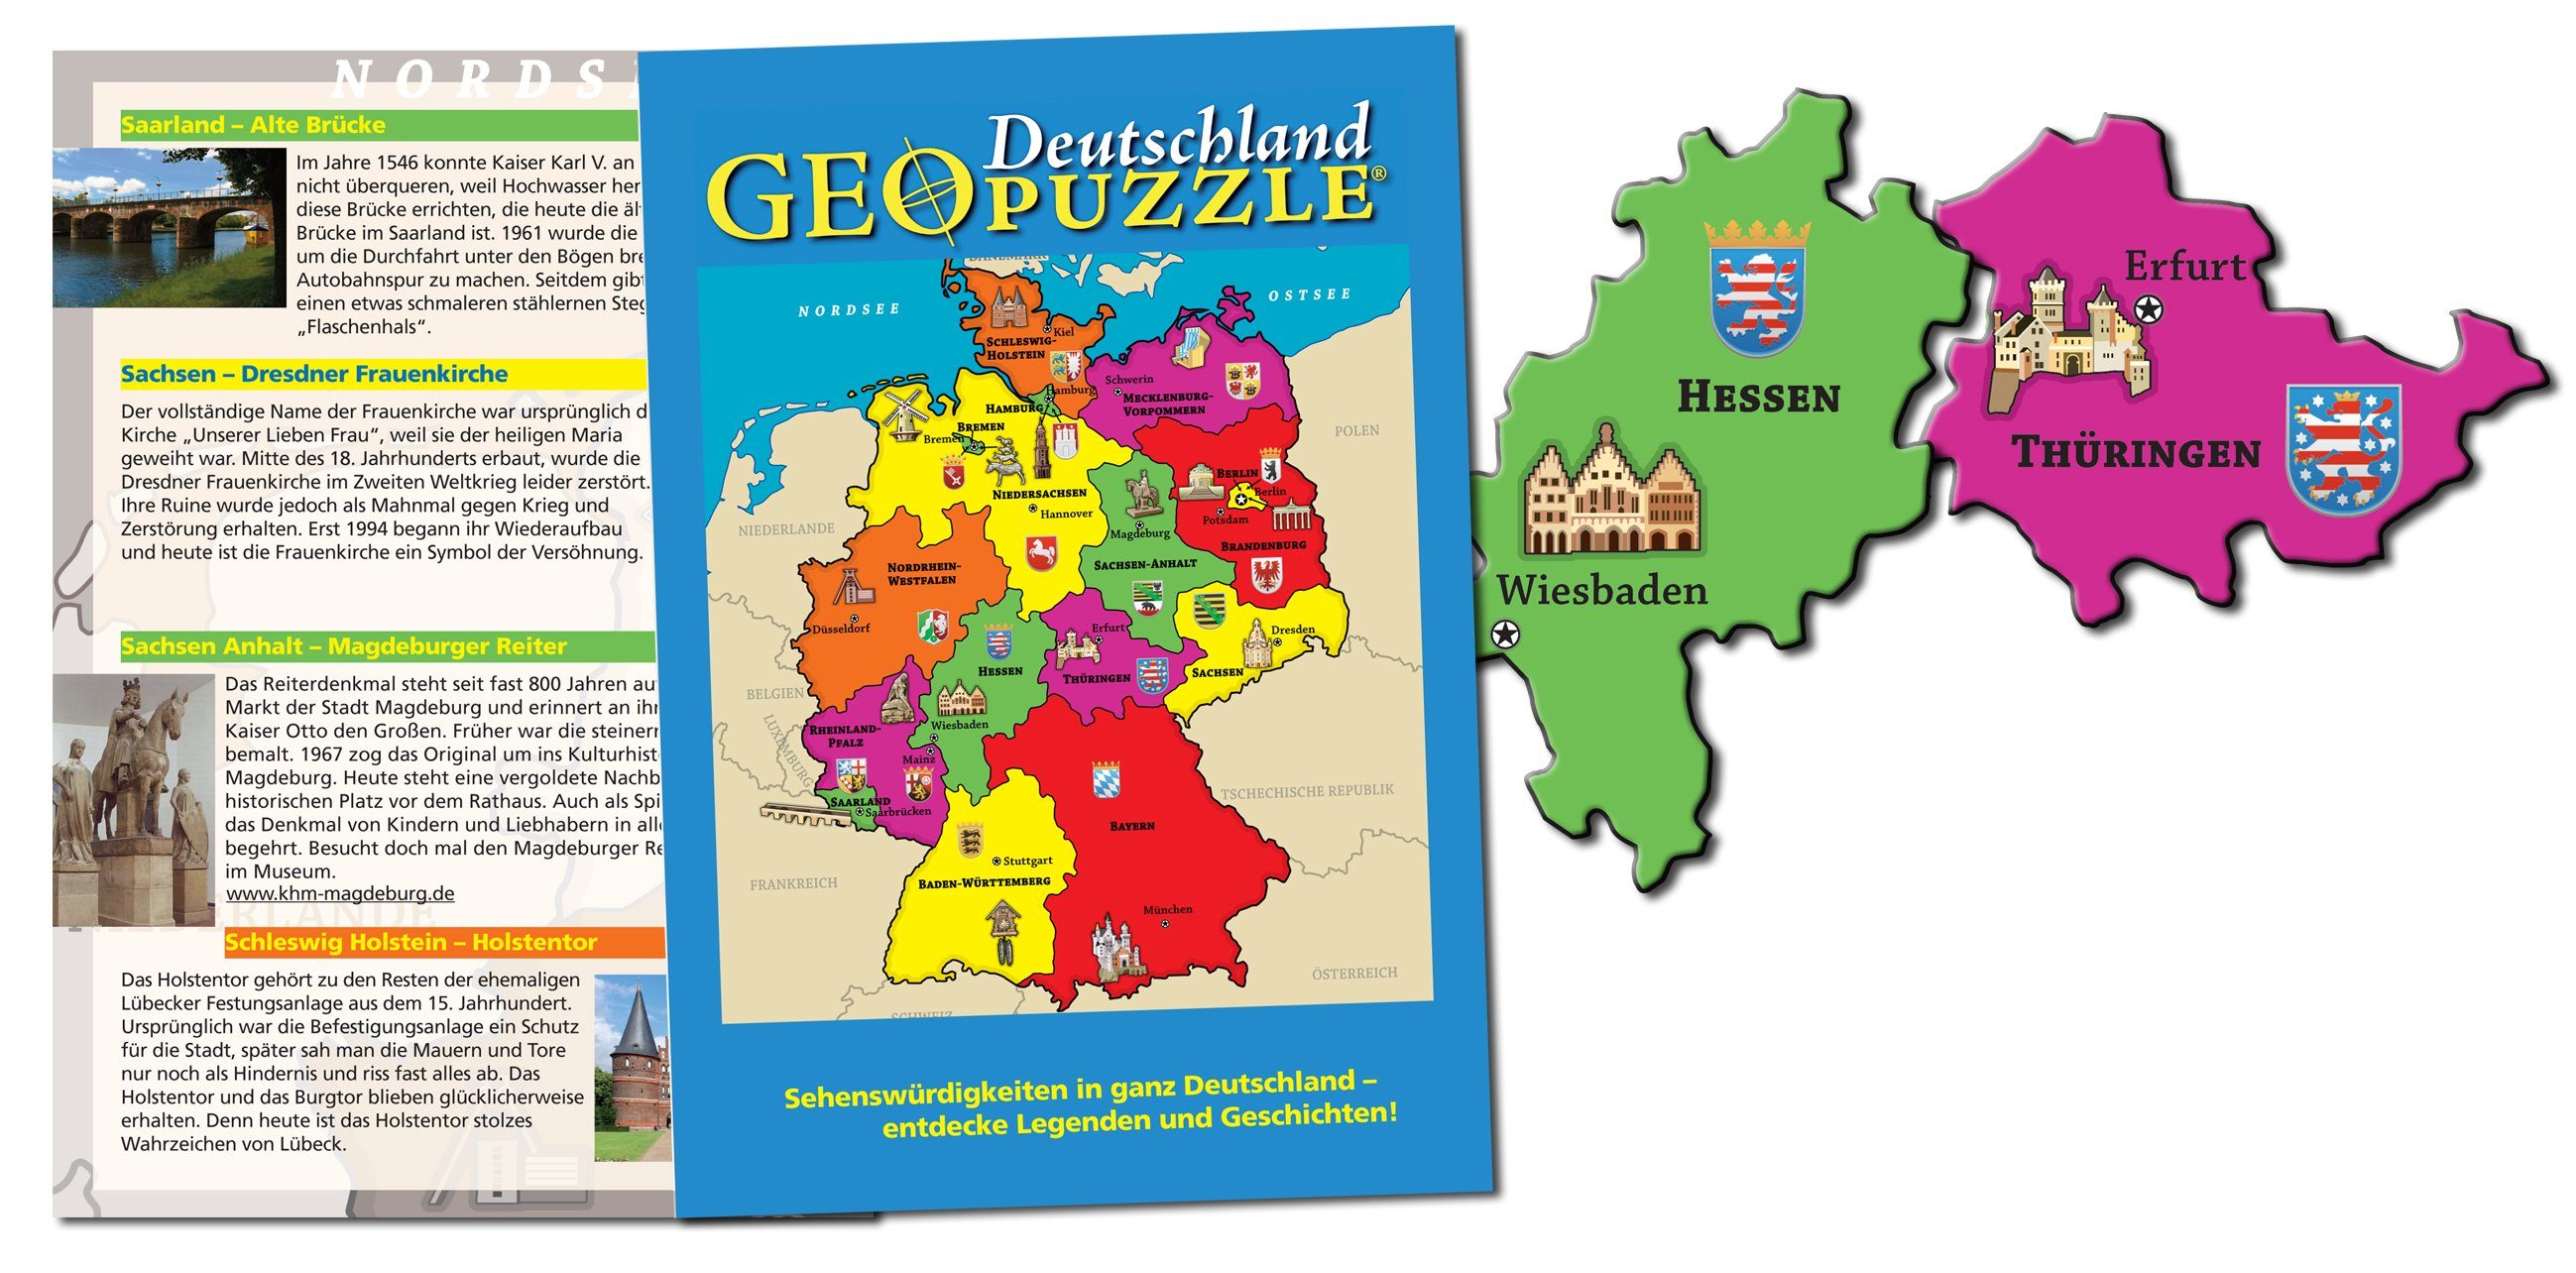 AMIGO ab Jahren, Teile Puzzle - Deutschland GeoPuzzle 4 51 Puzzleteile